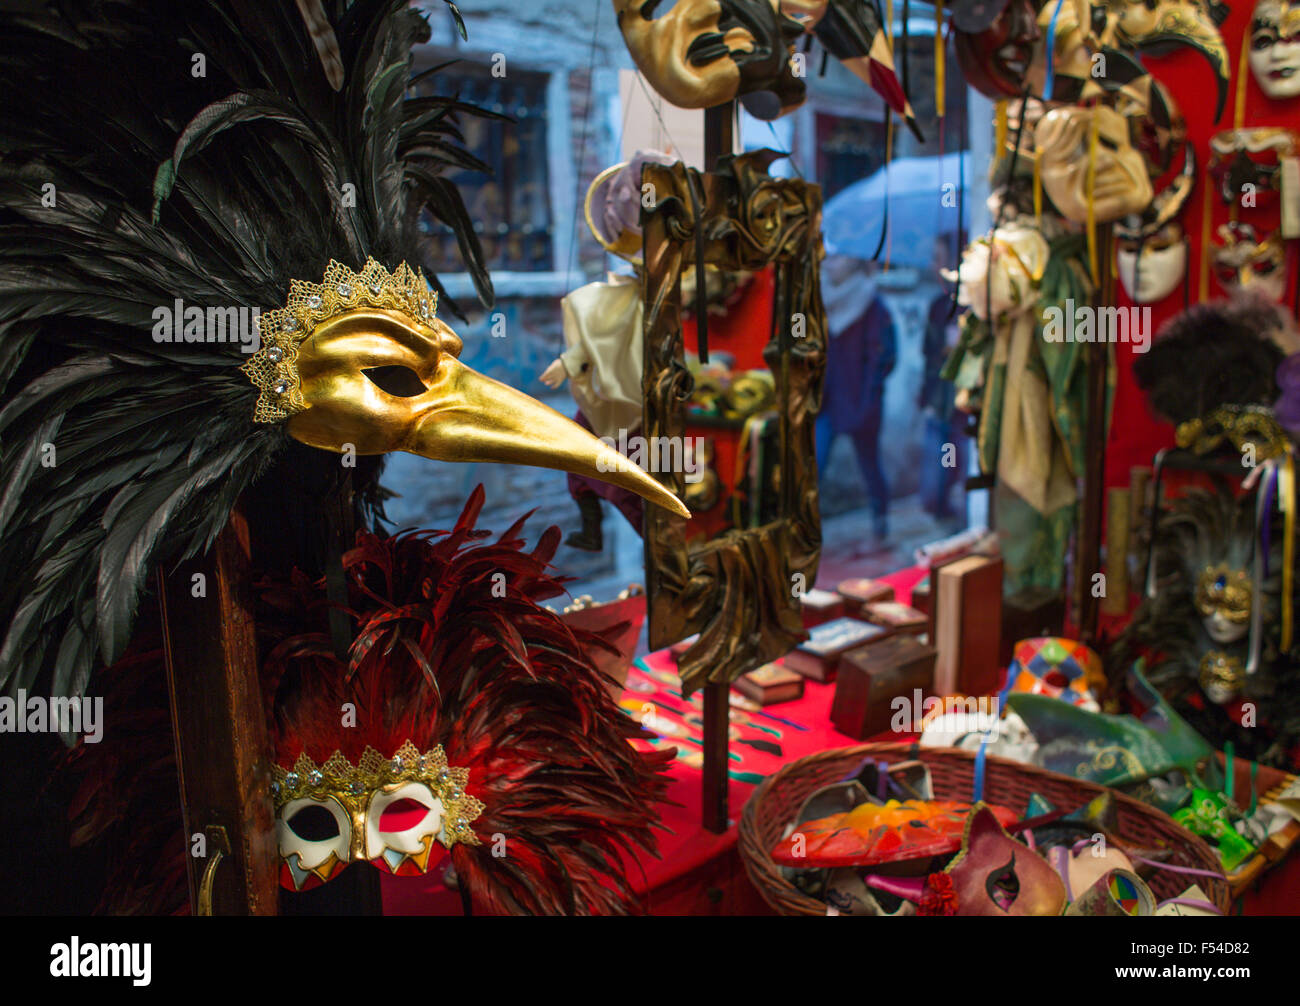 Masque Masque en boutique, Venise, Italie Banque D'Images